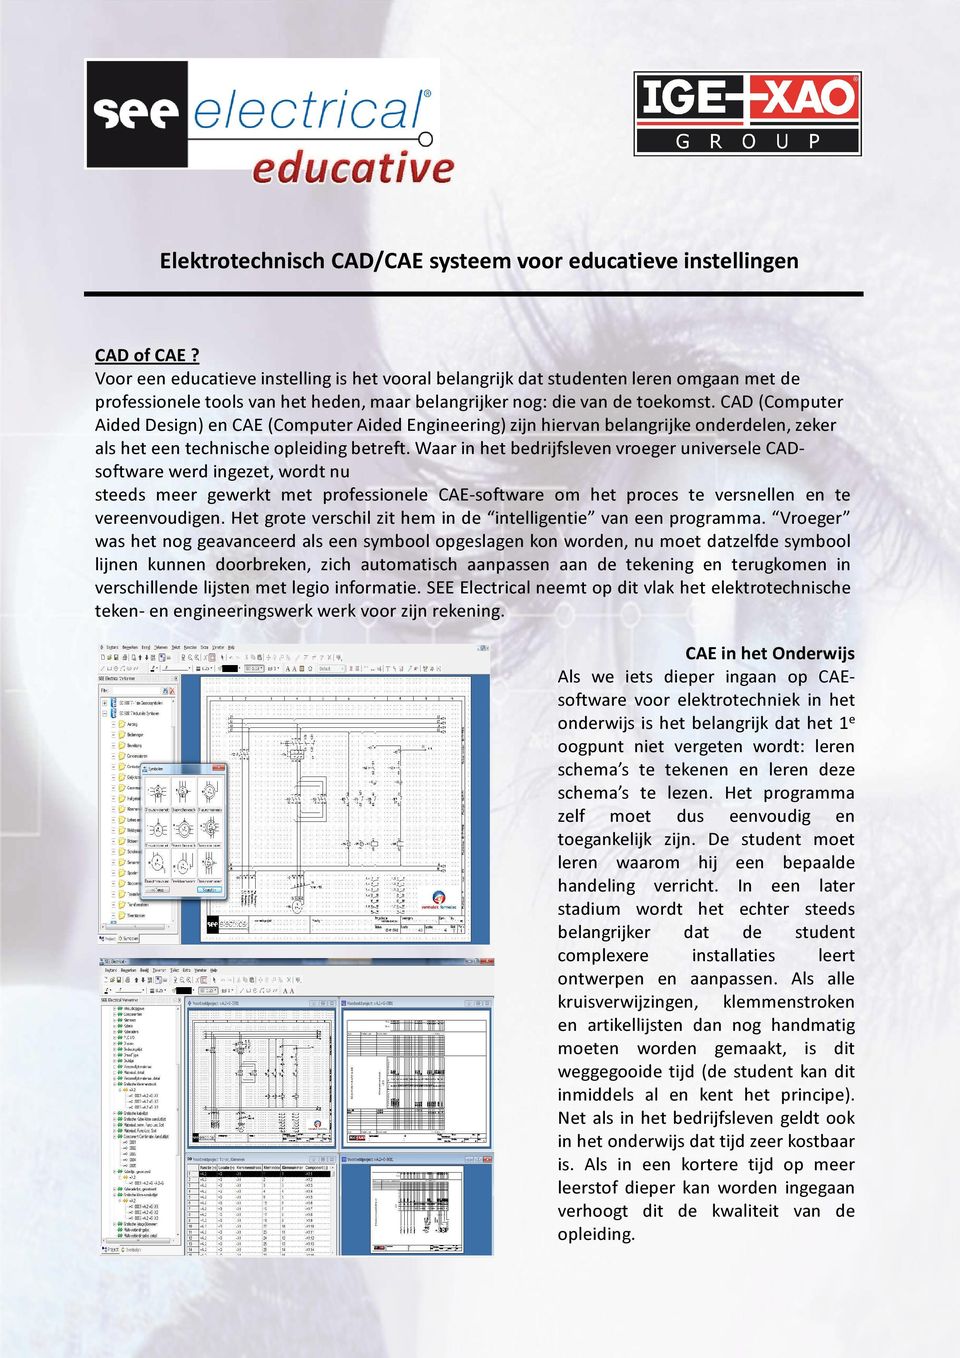 CAD (Computer Aided Design) en CAE (Computer Aided Engineering) zijn hiervan belangrijke onderdelen, zeker als het een technische opleiding betreft.